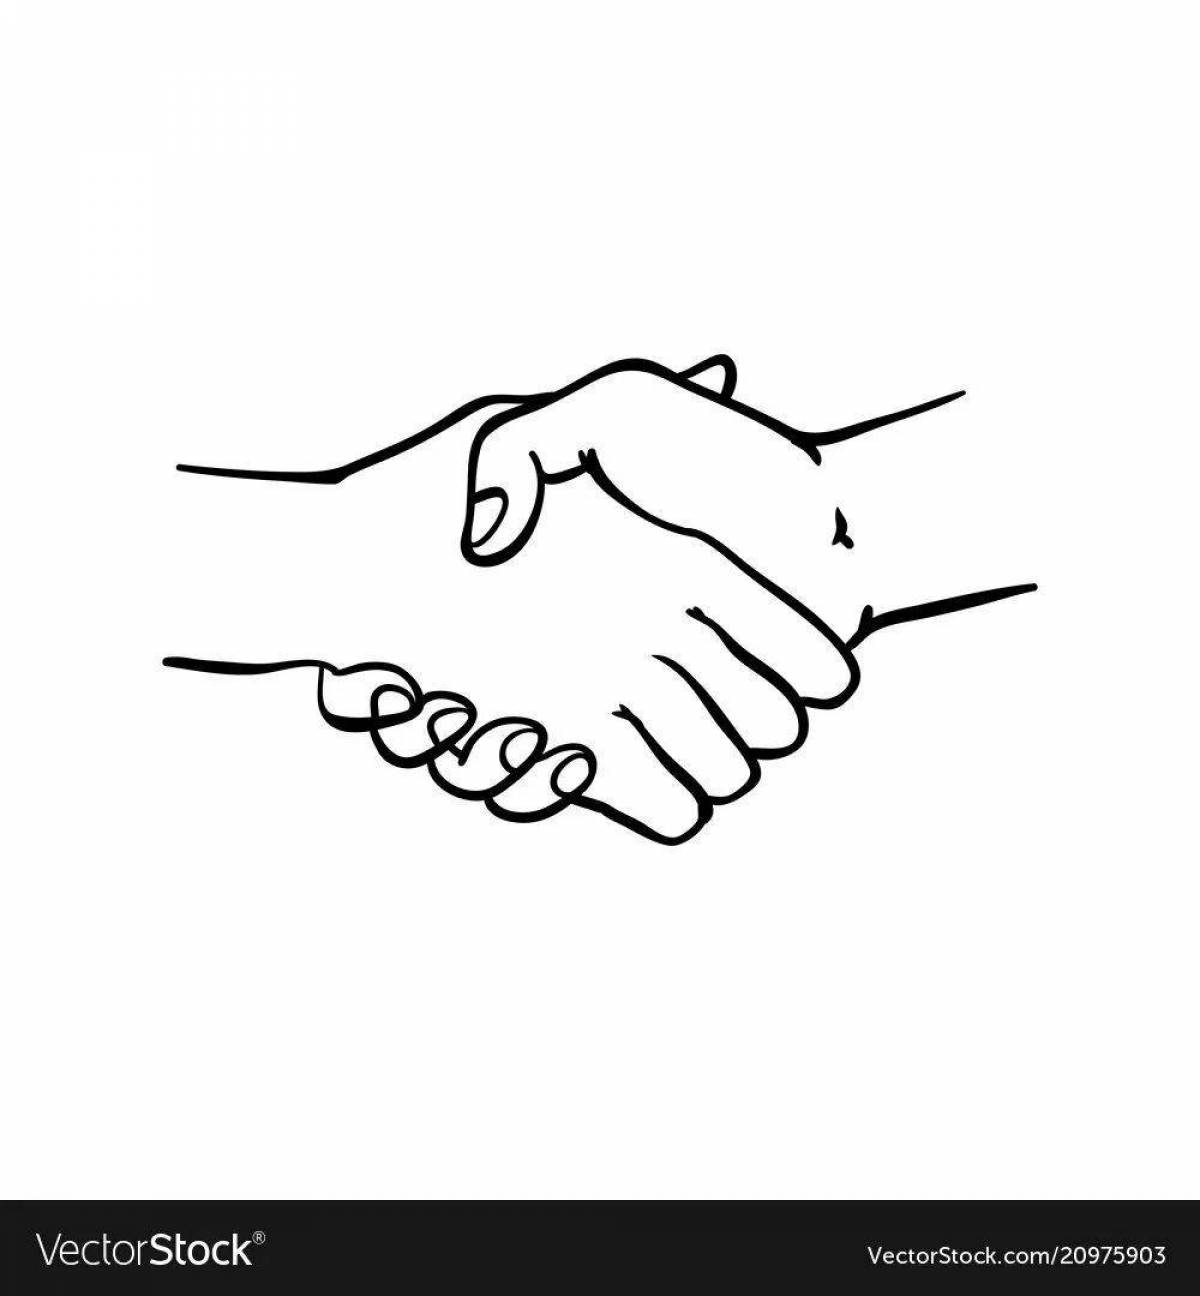 Знак мириться. Жест рукопожатие. Рукопожатие детей. Рисунок рукопожатия двух рук. Жест пожатие рук.